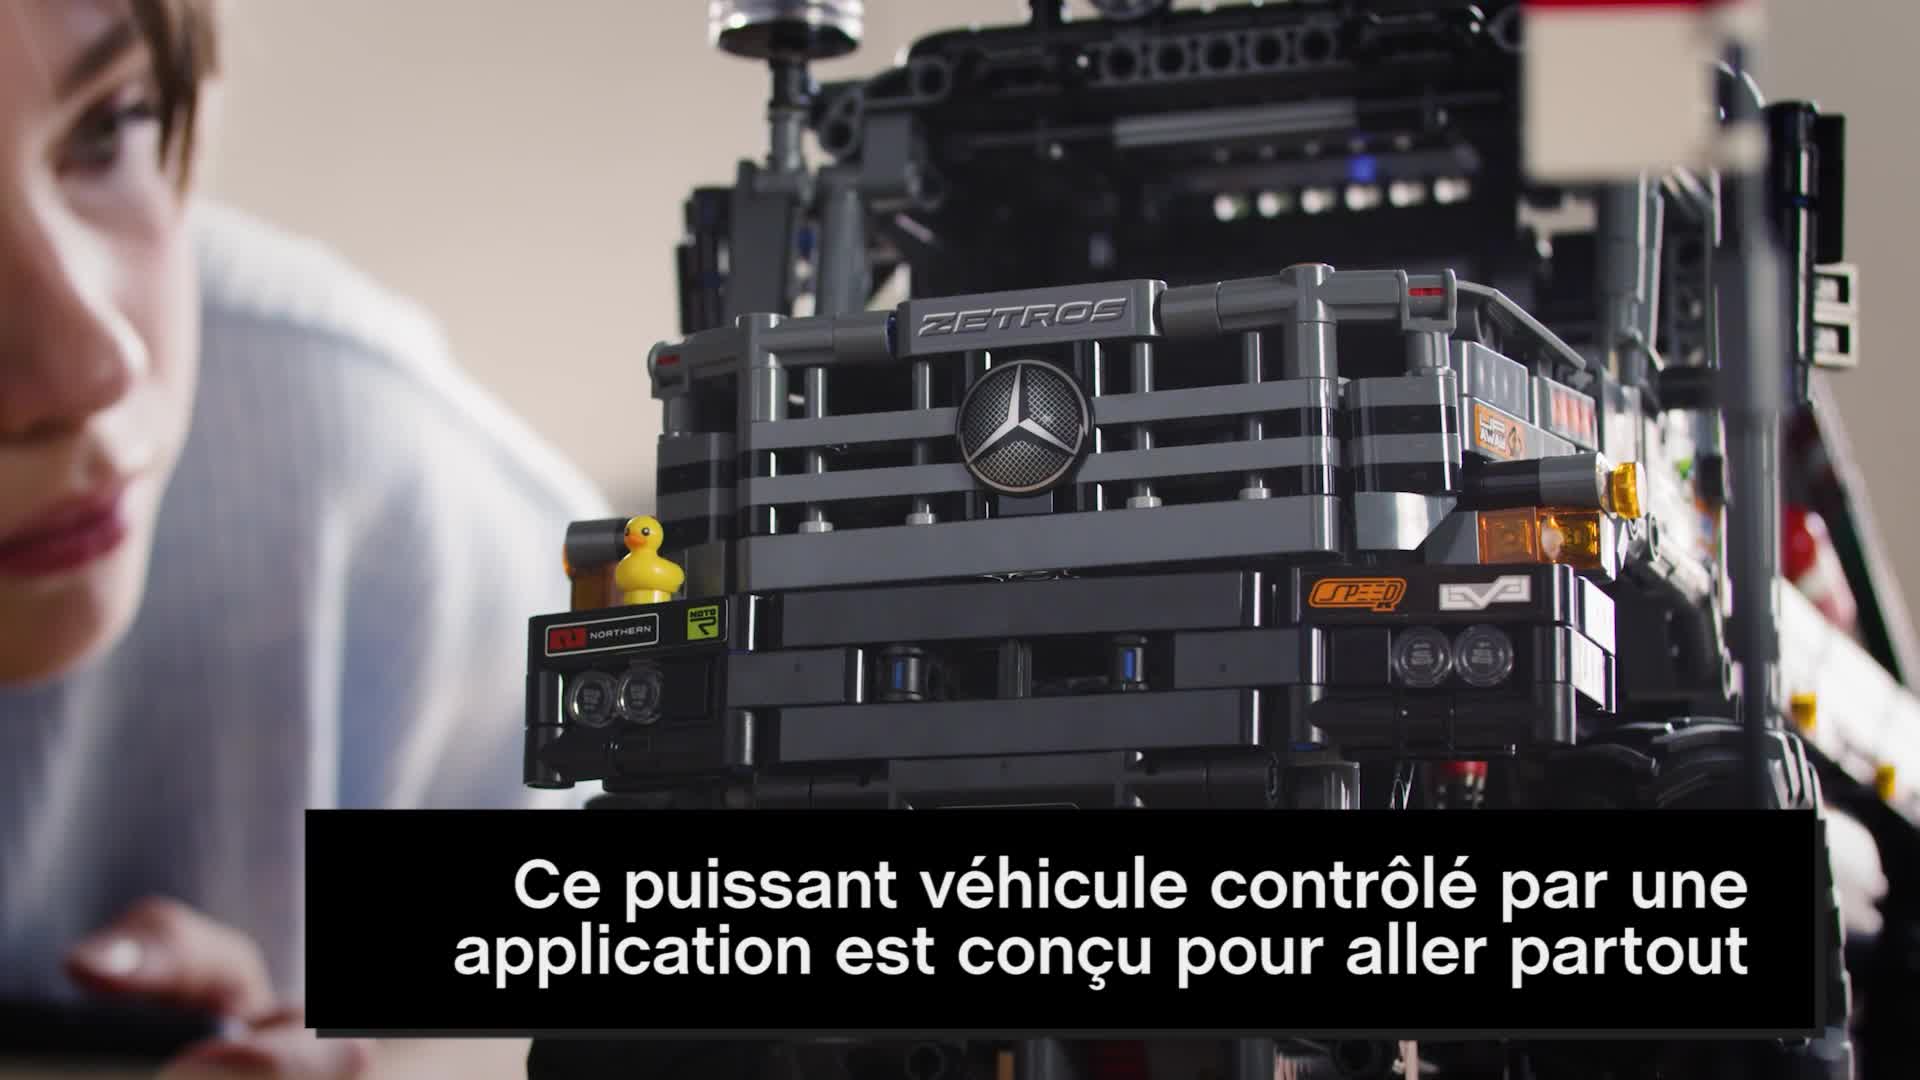 LEGO 42129 Le camion d'essai 4x4 Mercedes-Benz Zetros télécommandé